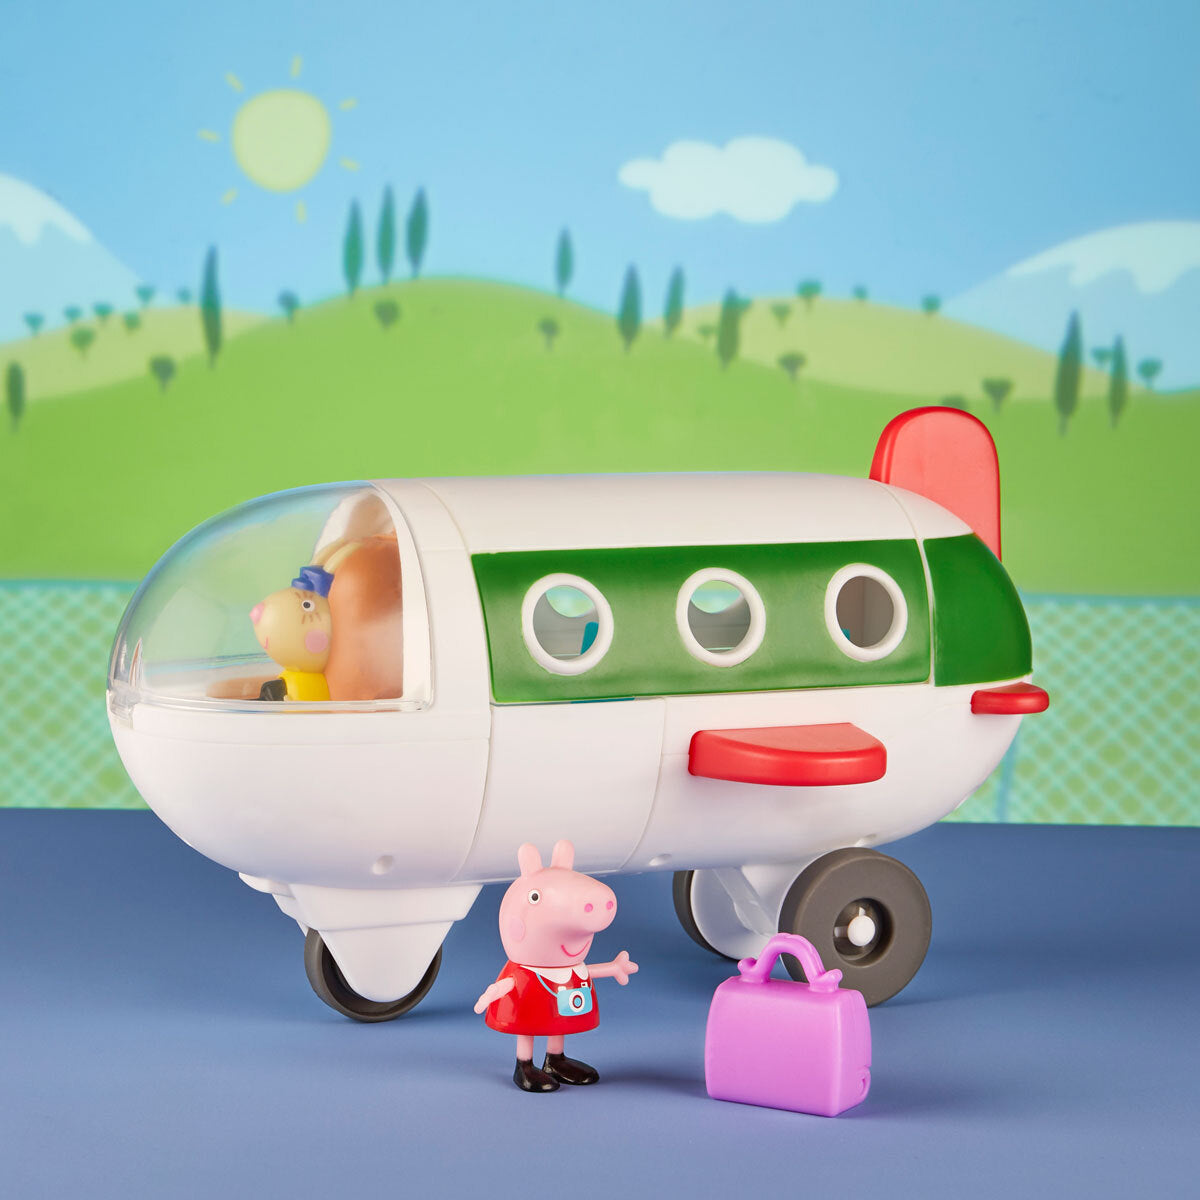 Peppa Pig Peppa Adventures Air Peppa Playset